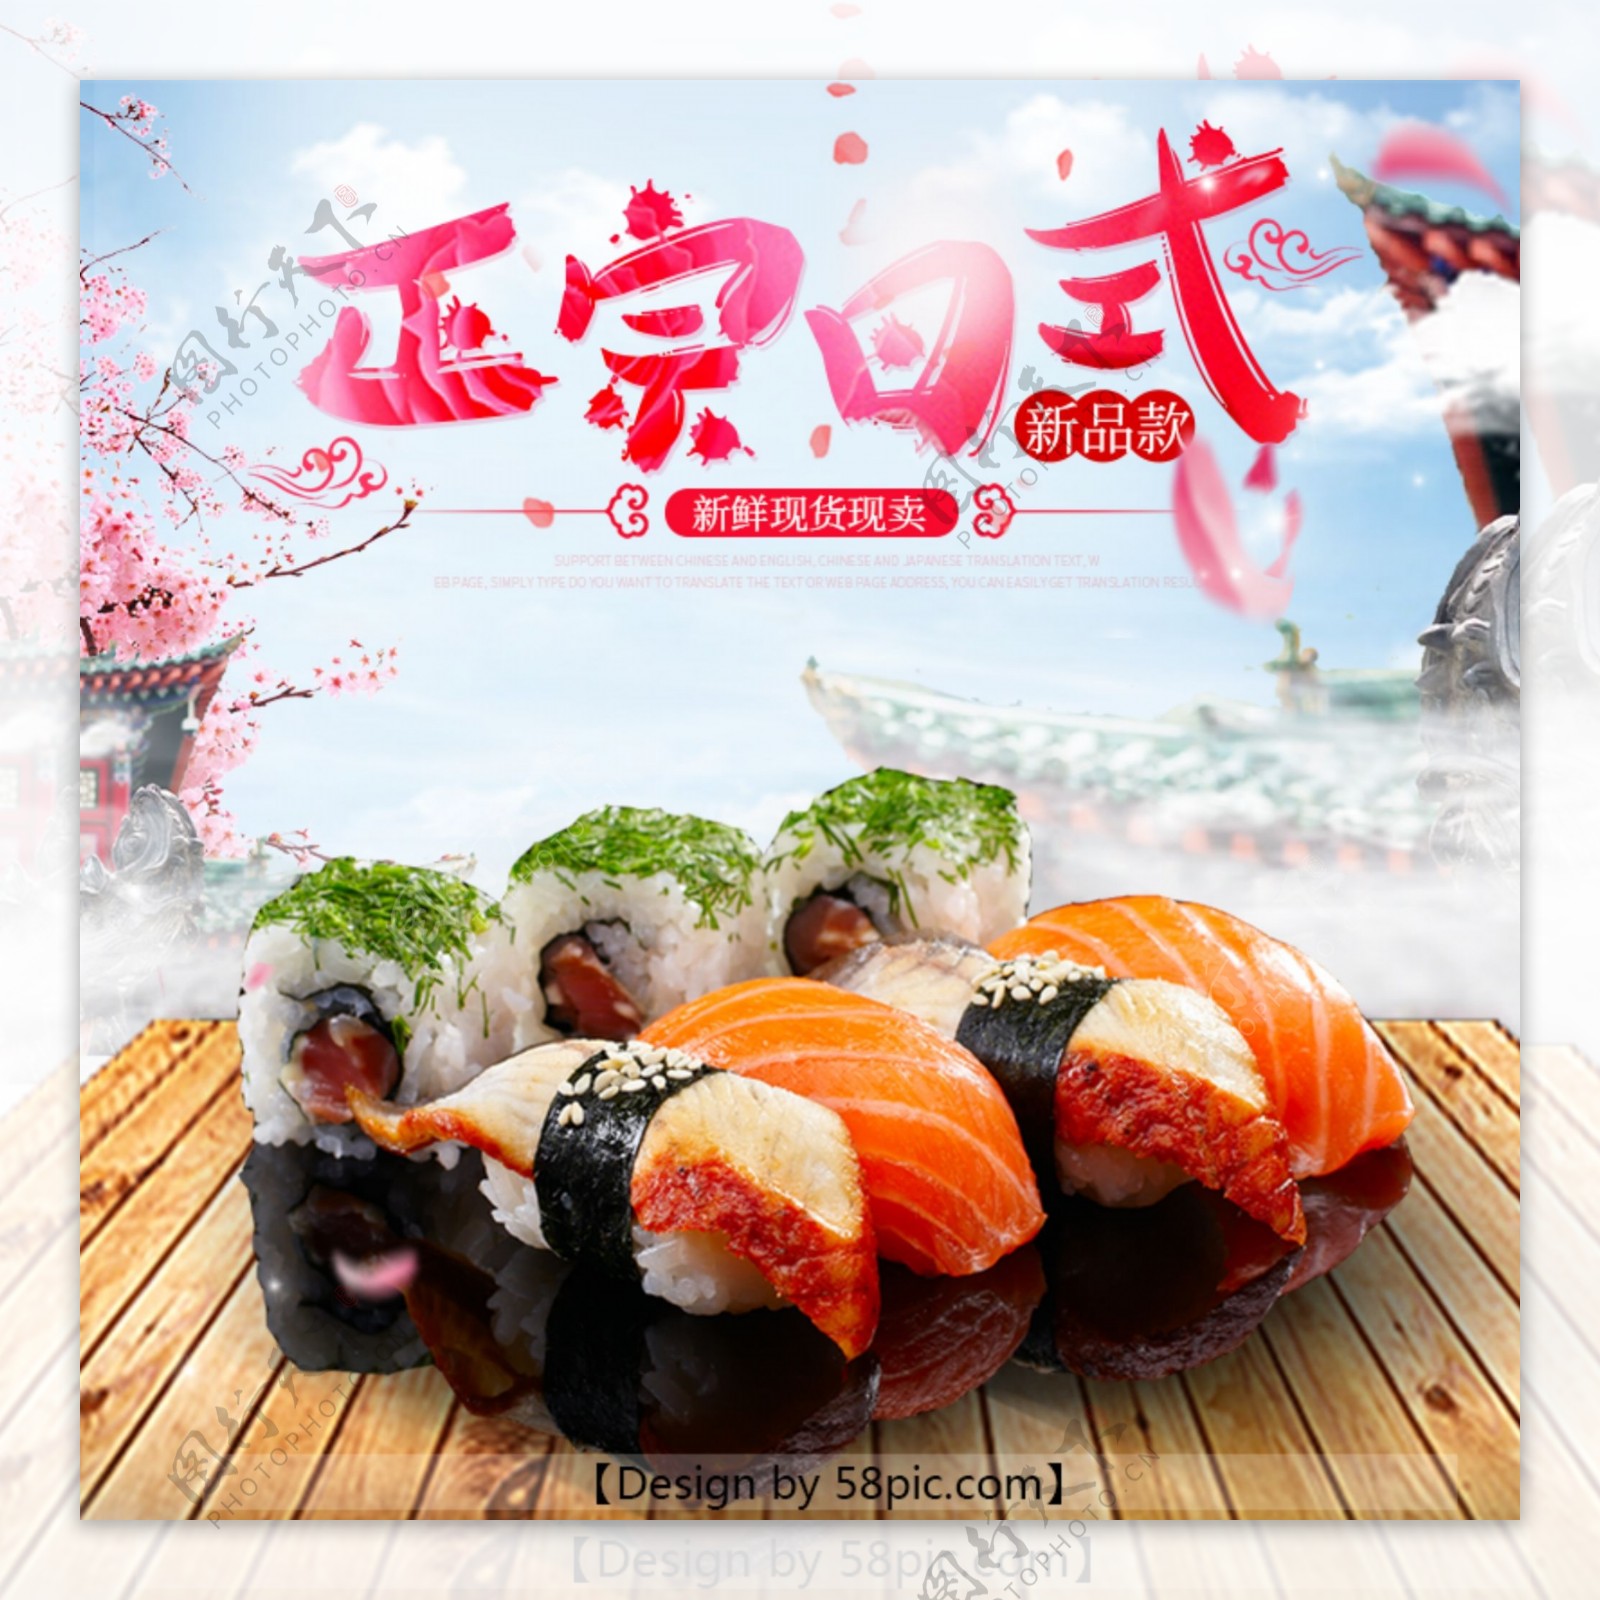 天猫淘宝电商食品食物日式寿司主图直通车PSD模版